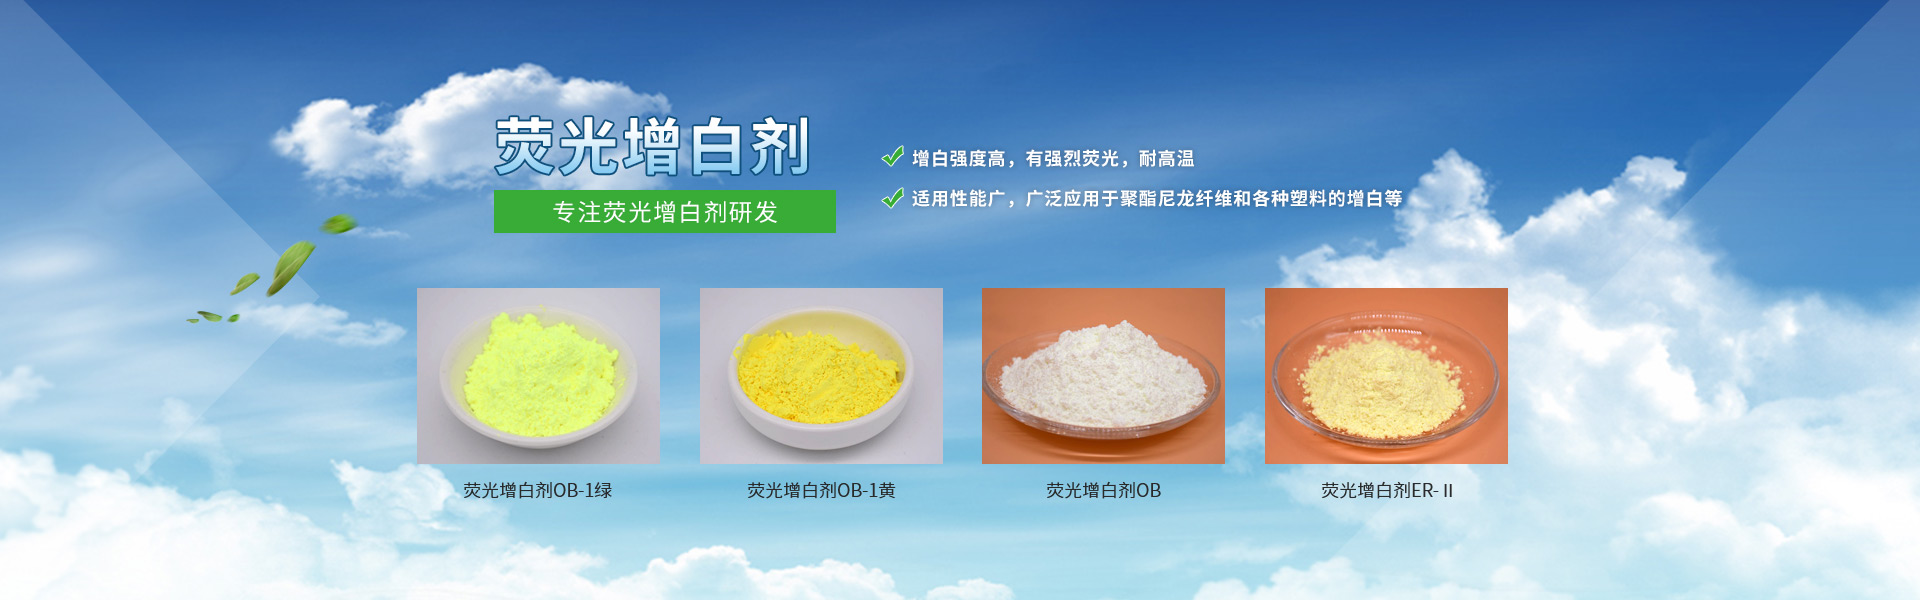 荧光增白剂OB-1、塑料增白剂、荧光增白剂、增白剂、洗涤增白剂